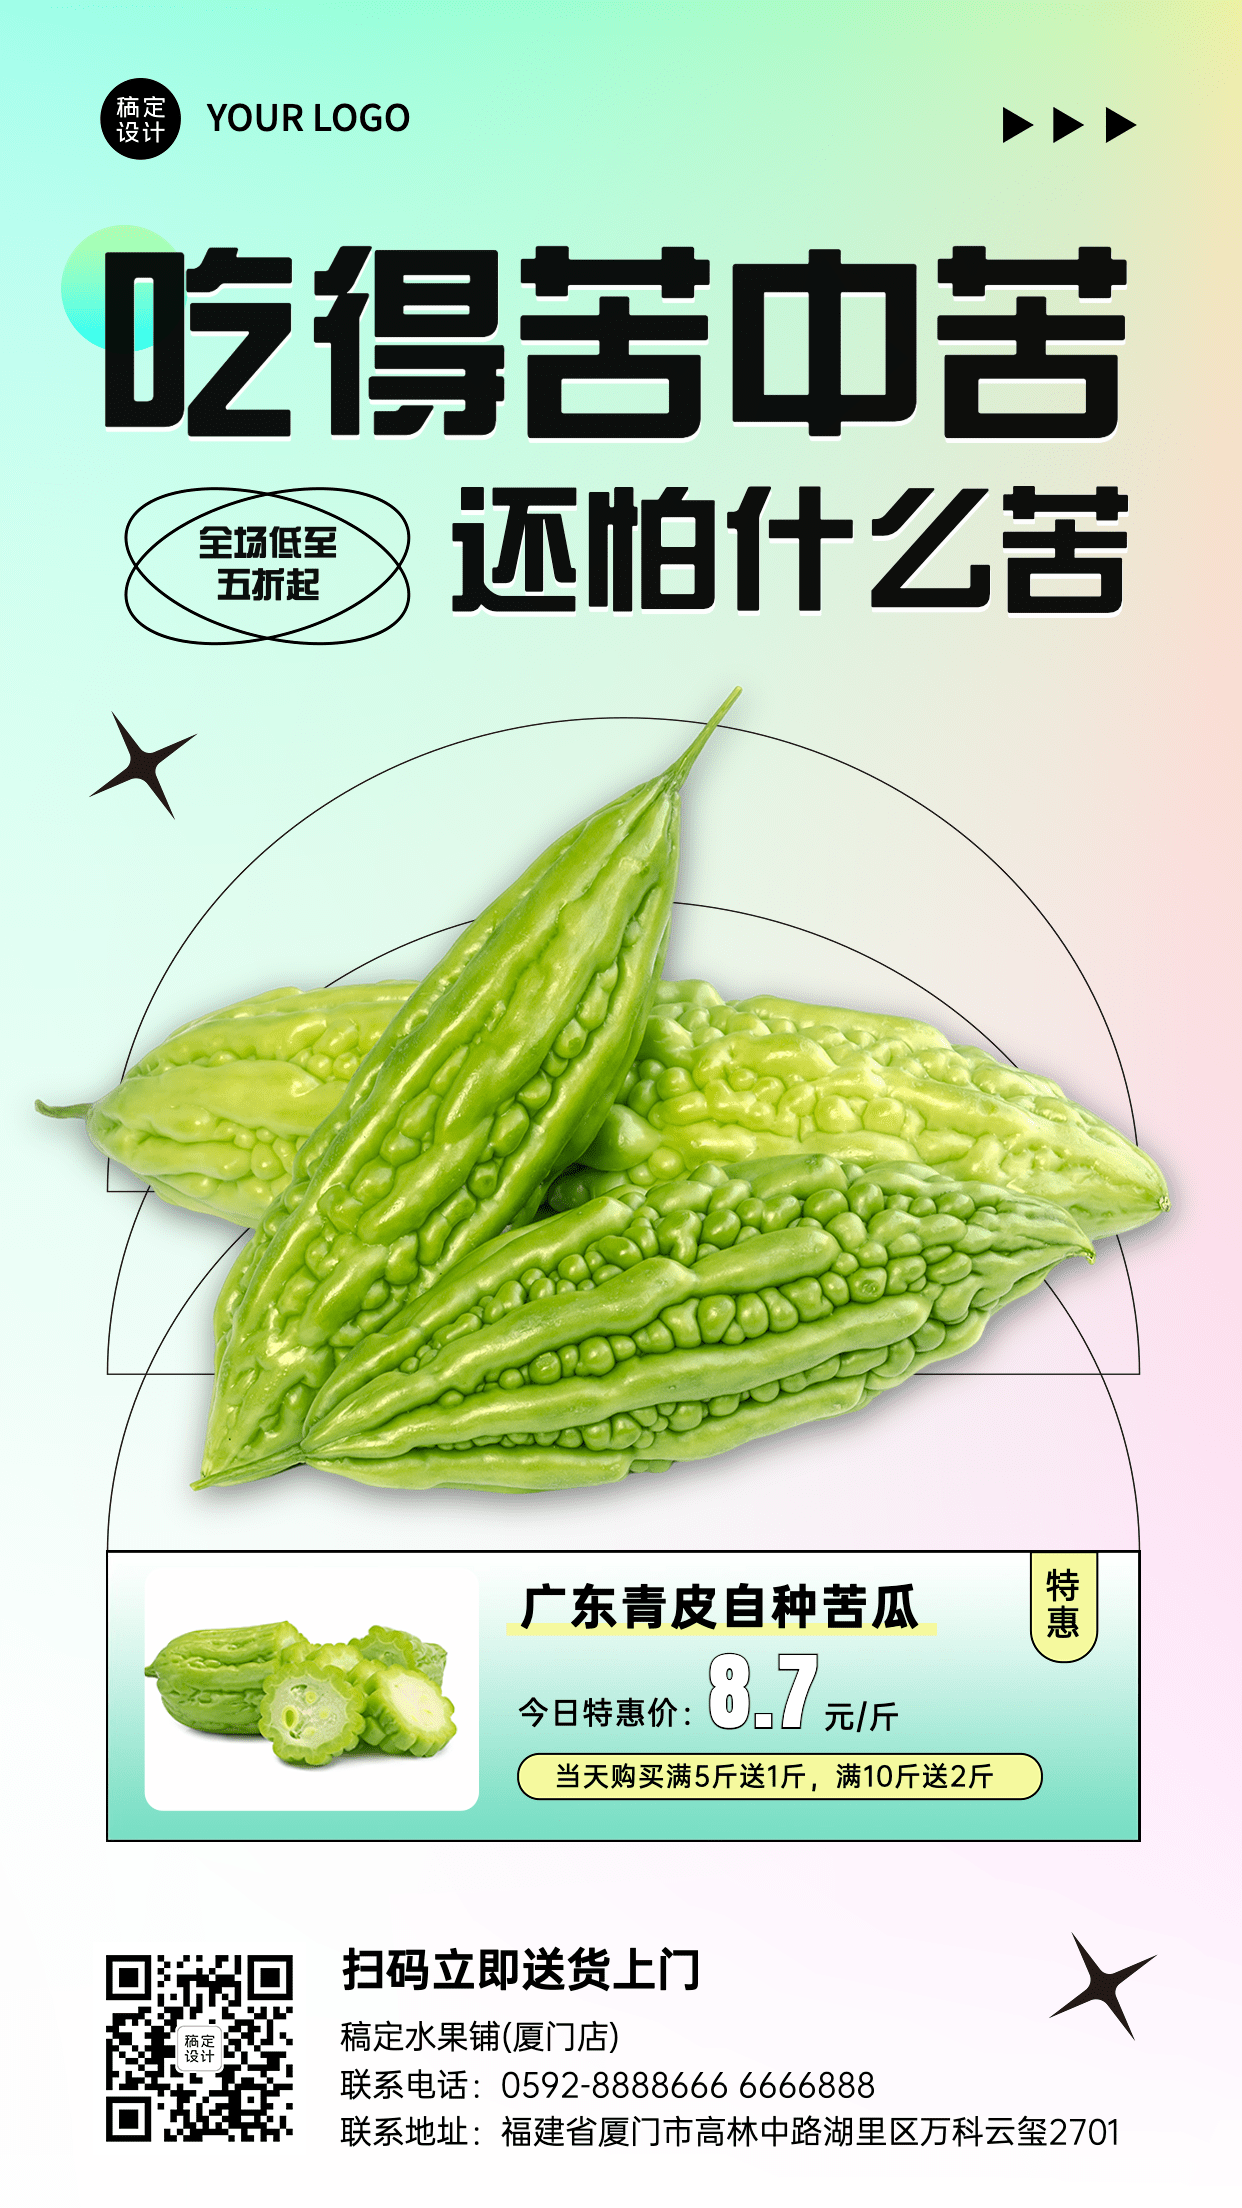 弥散风餐饮蔬菜苦瓜产品展示营销活动手机海报预览效果